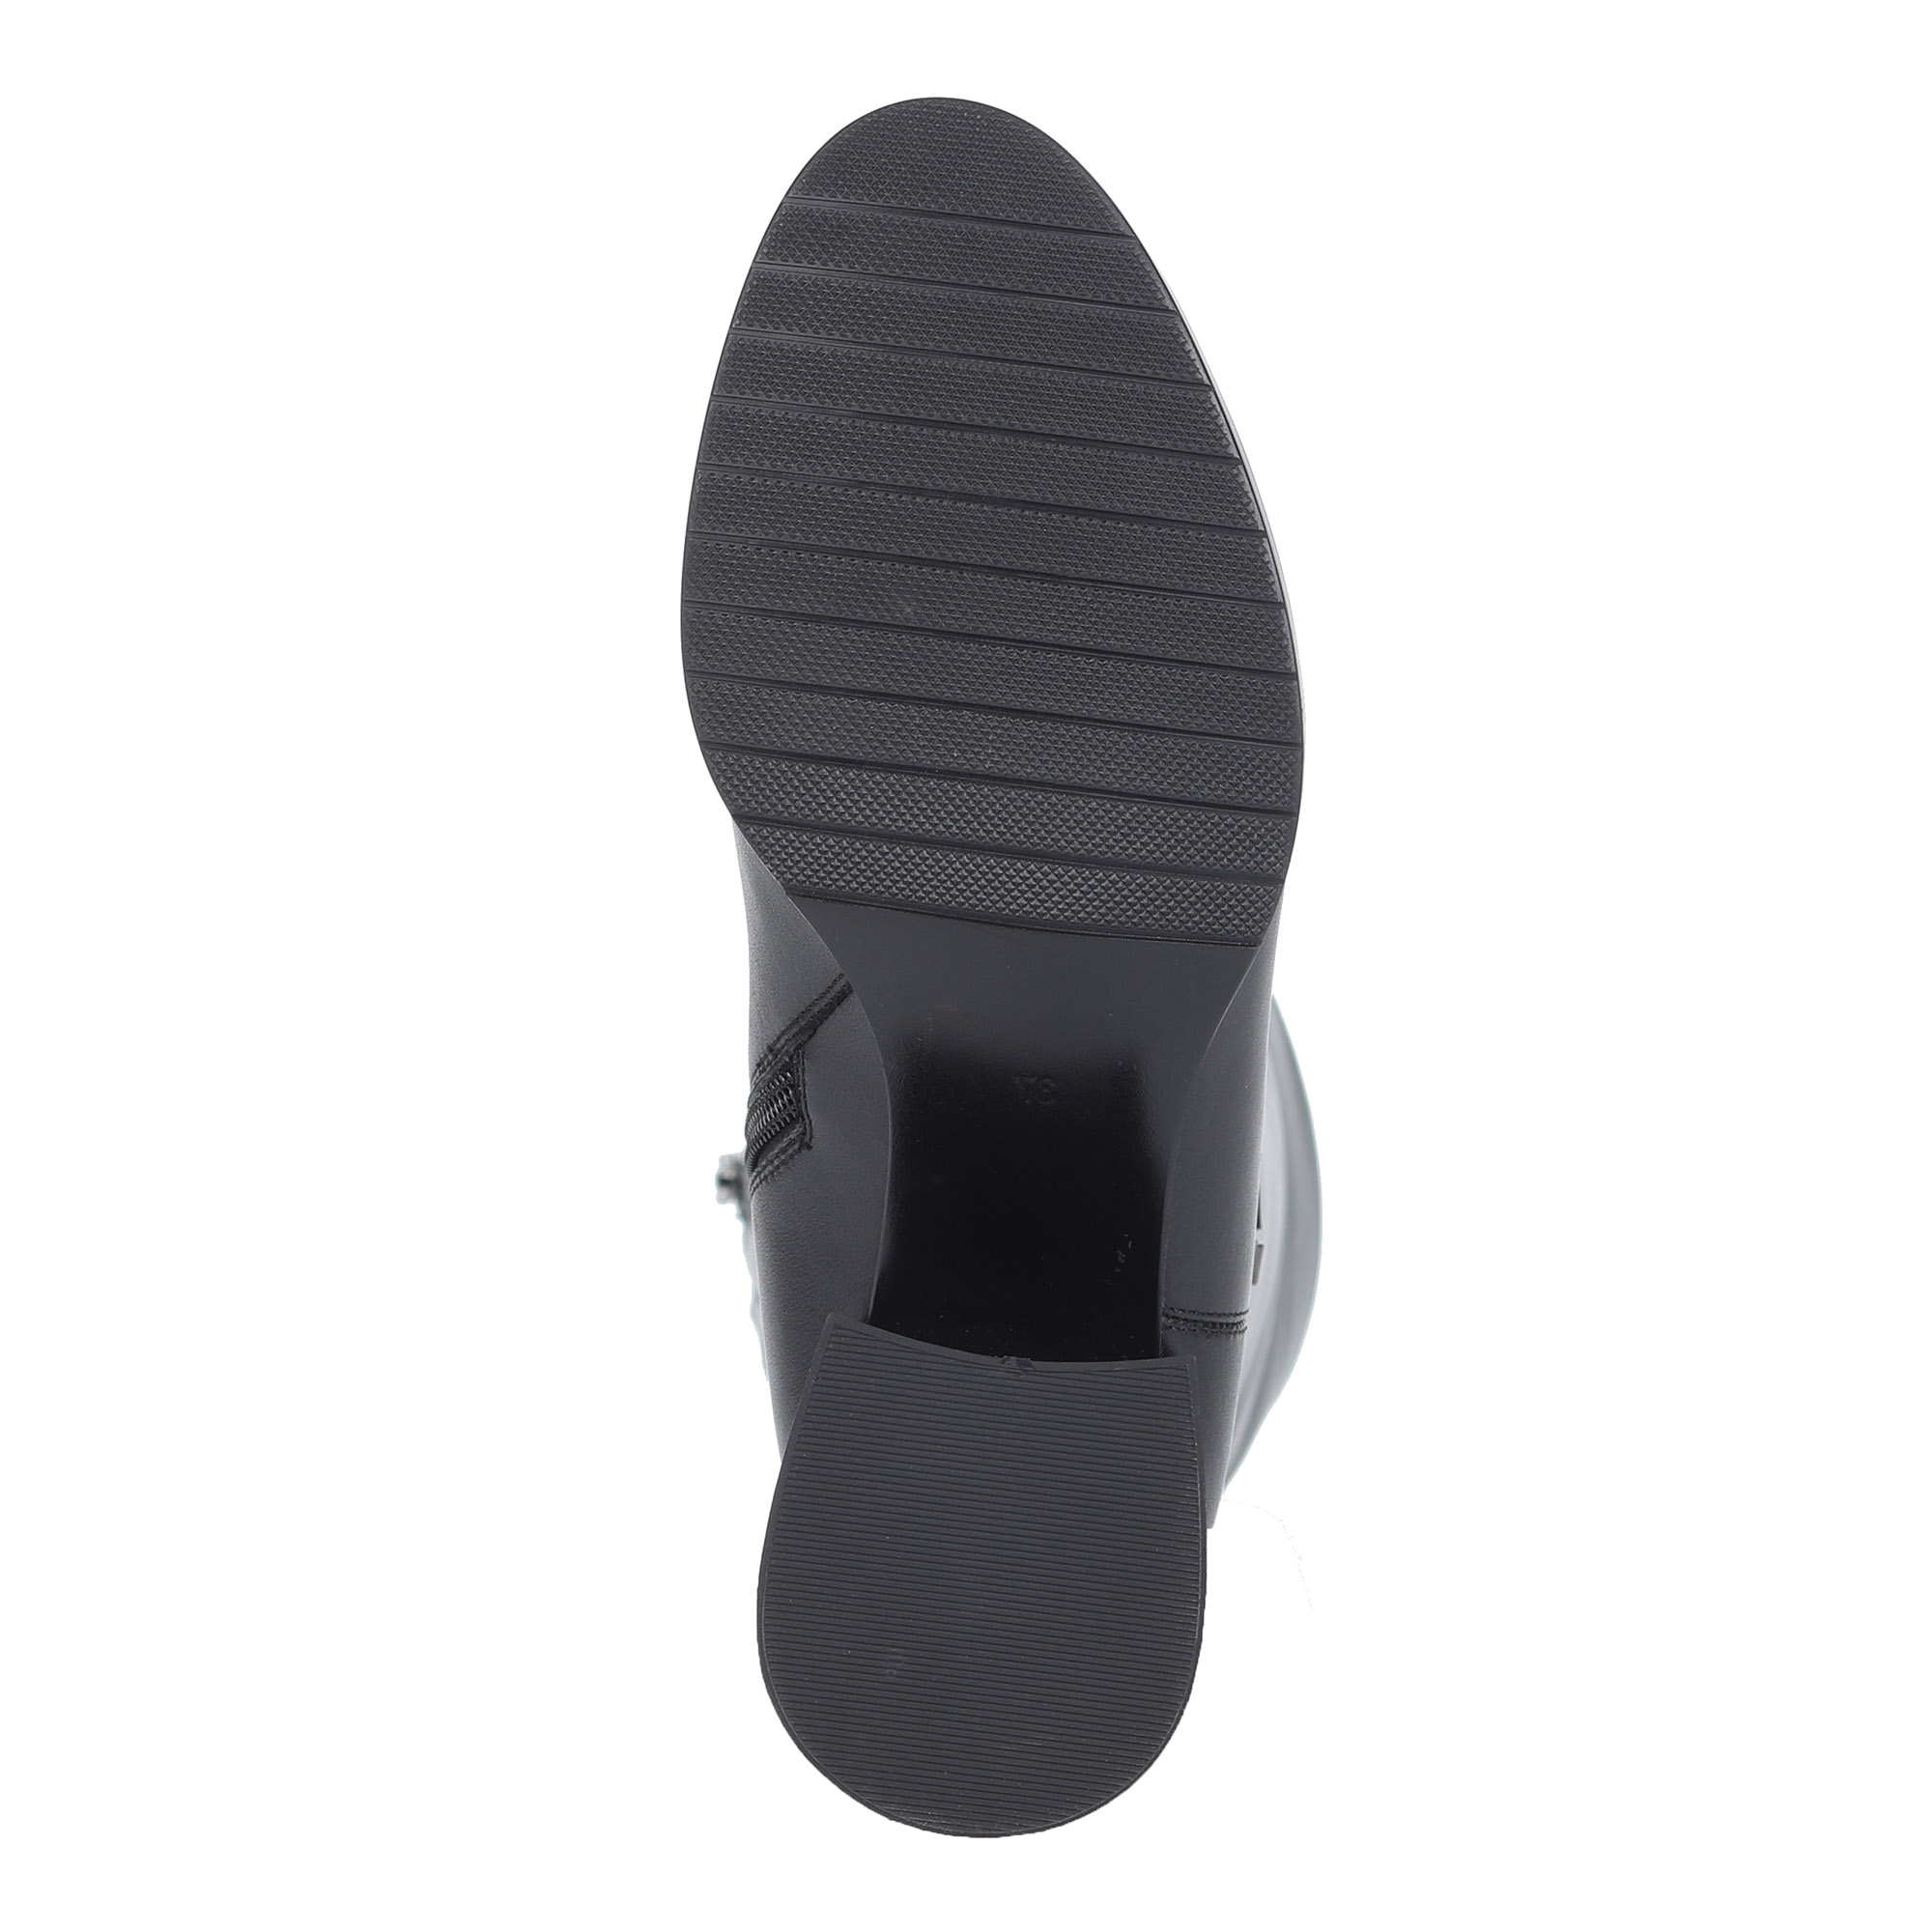 Черные сапоги на устойчивом каблуке от Respect-shoes